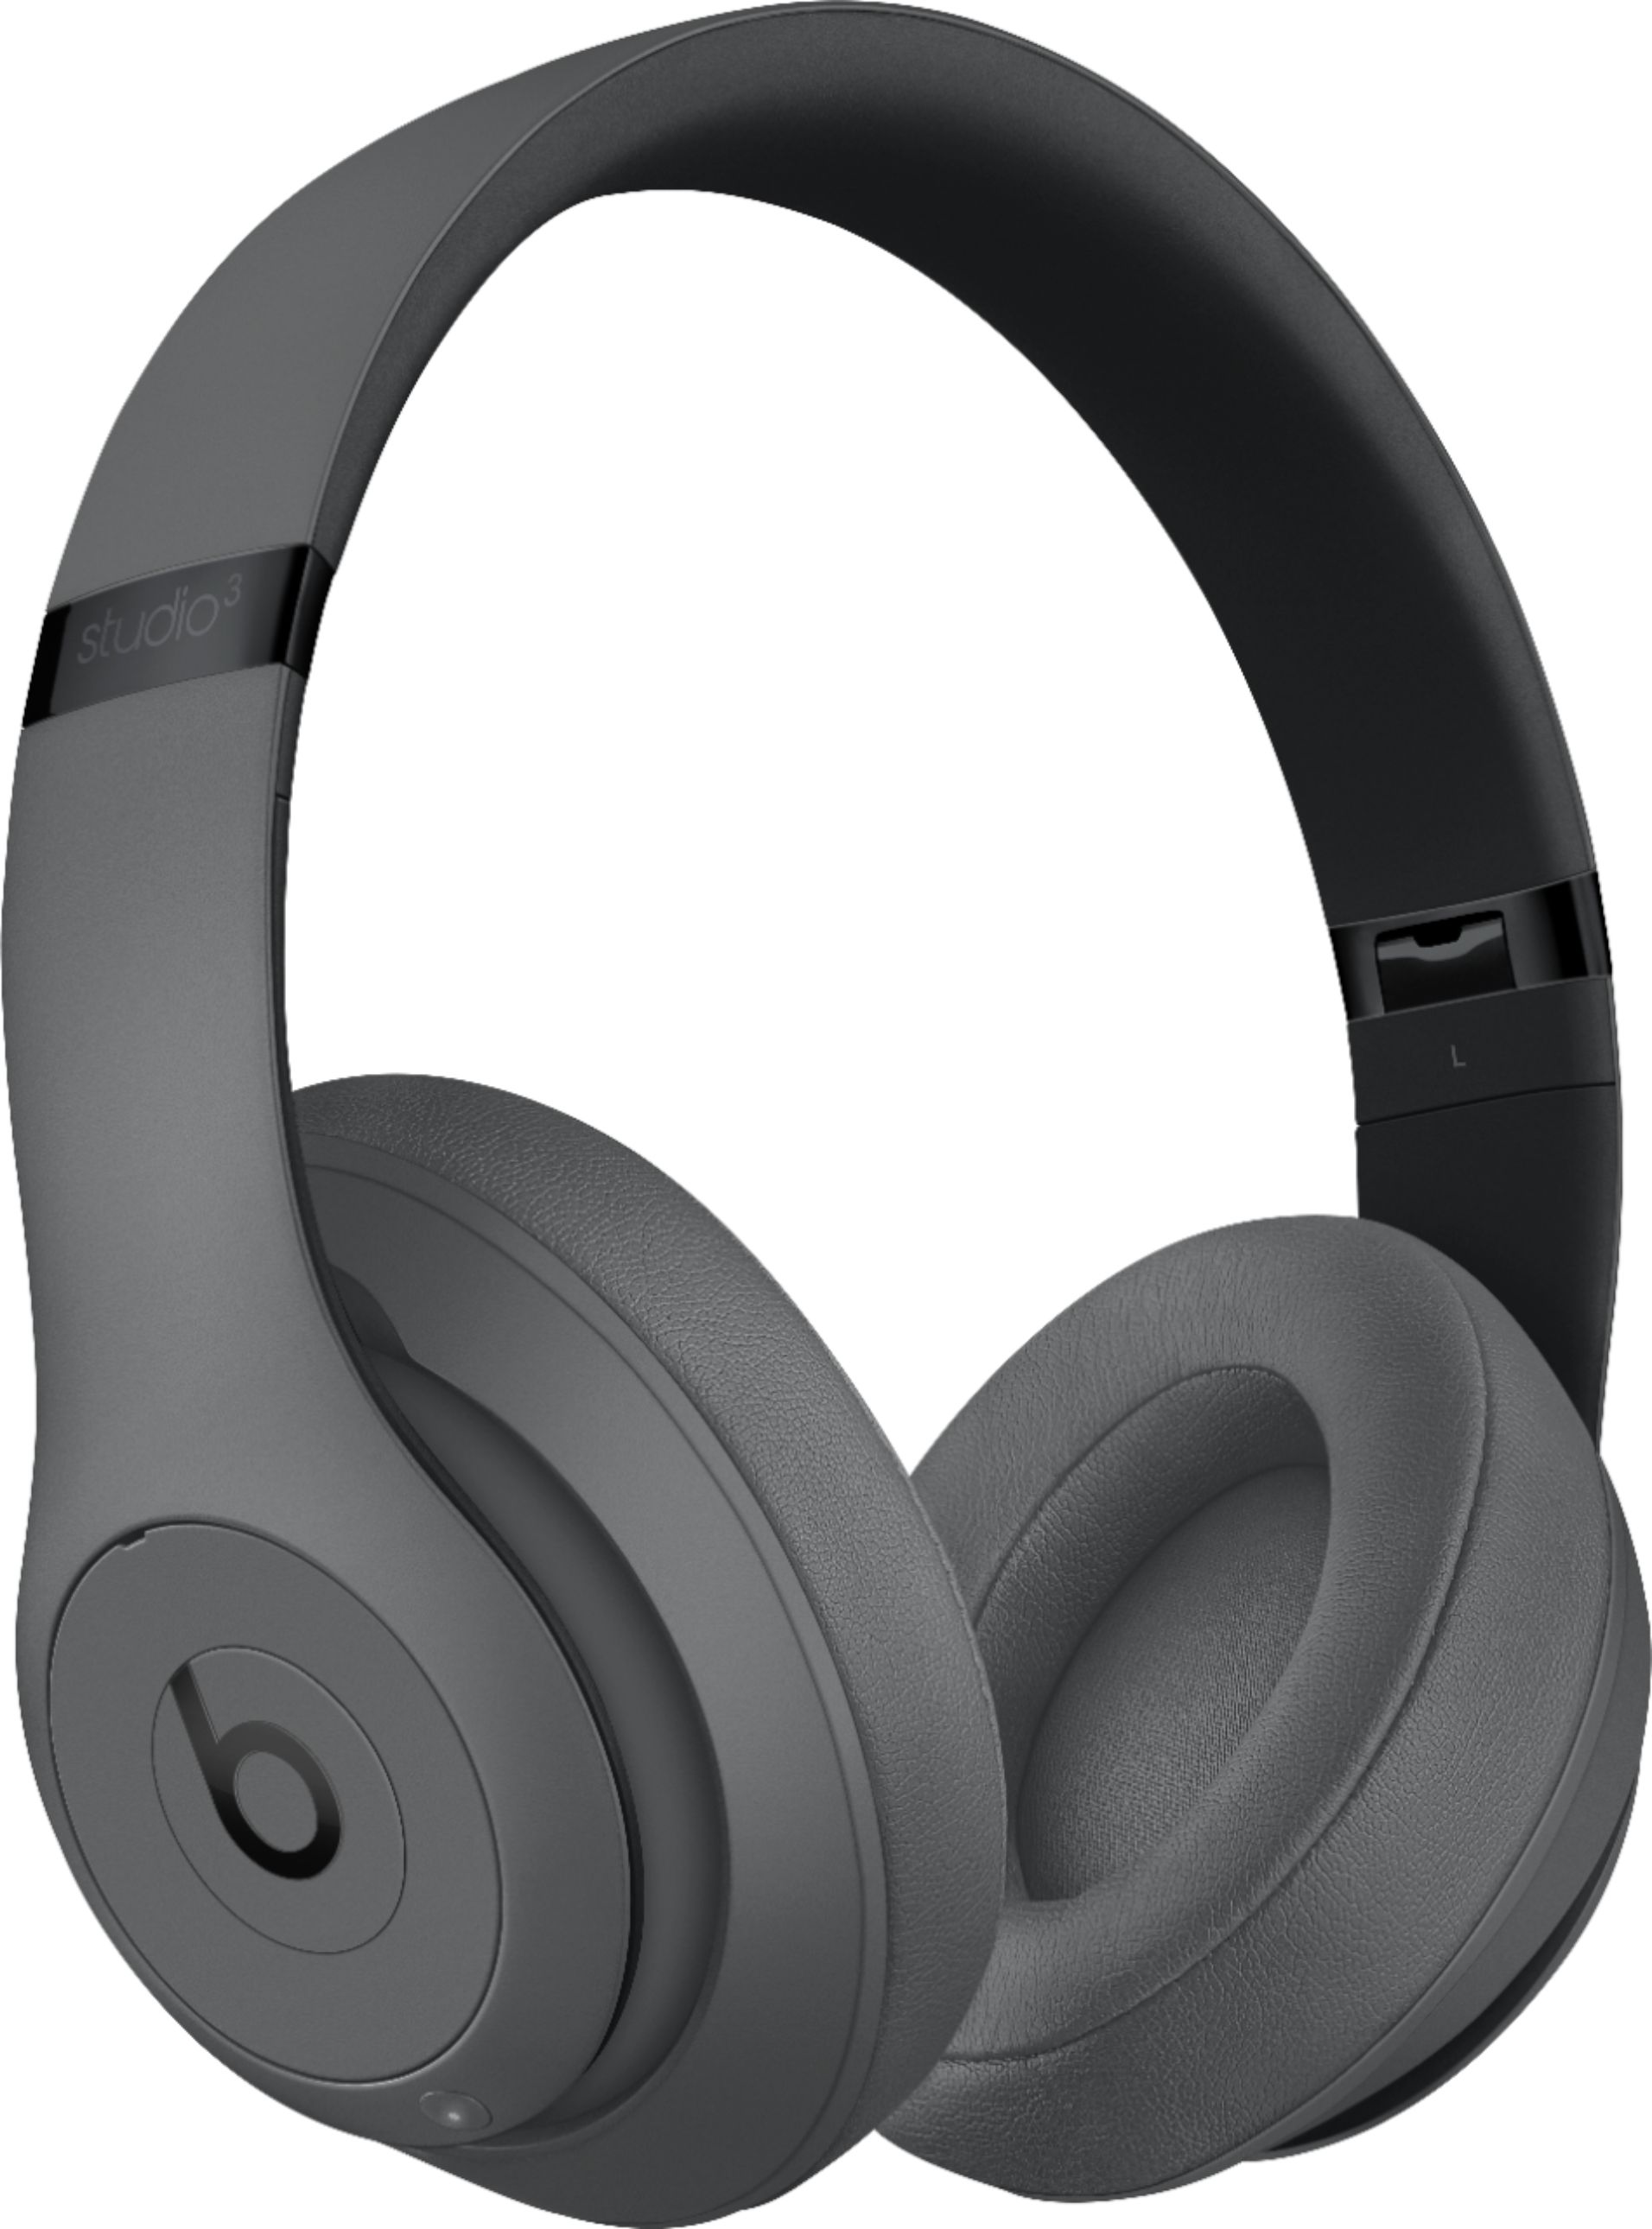 Beats Studio Wireless Headphones - Best Buy